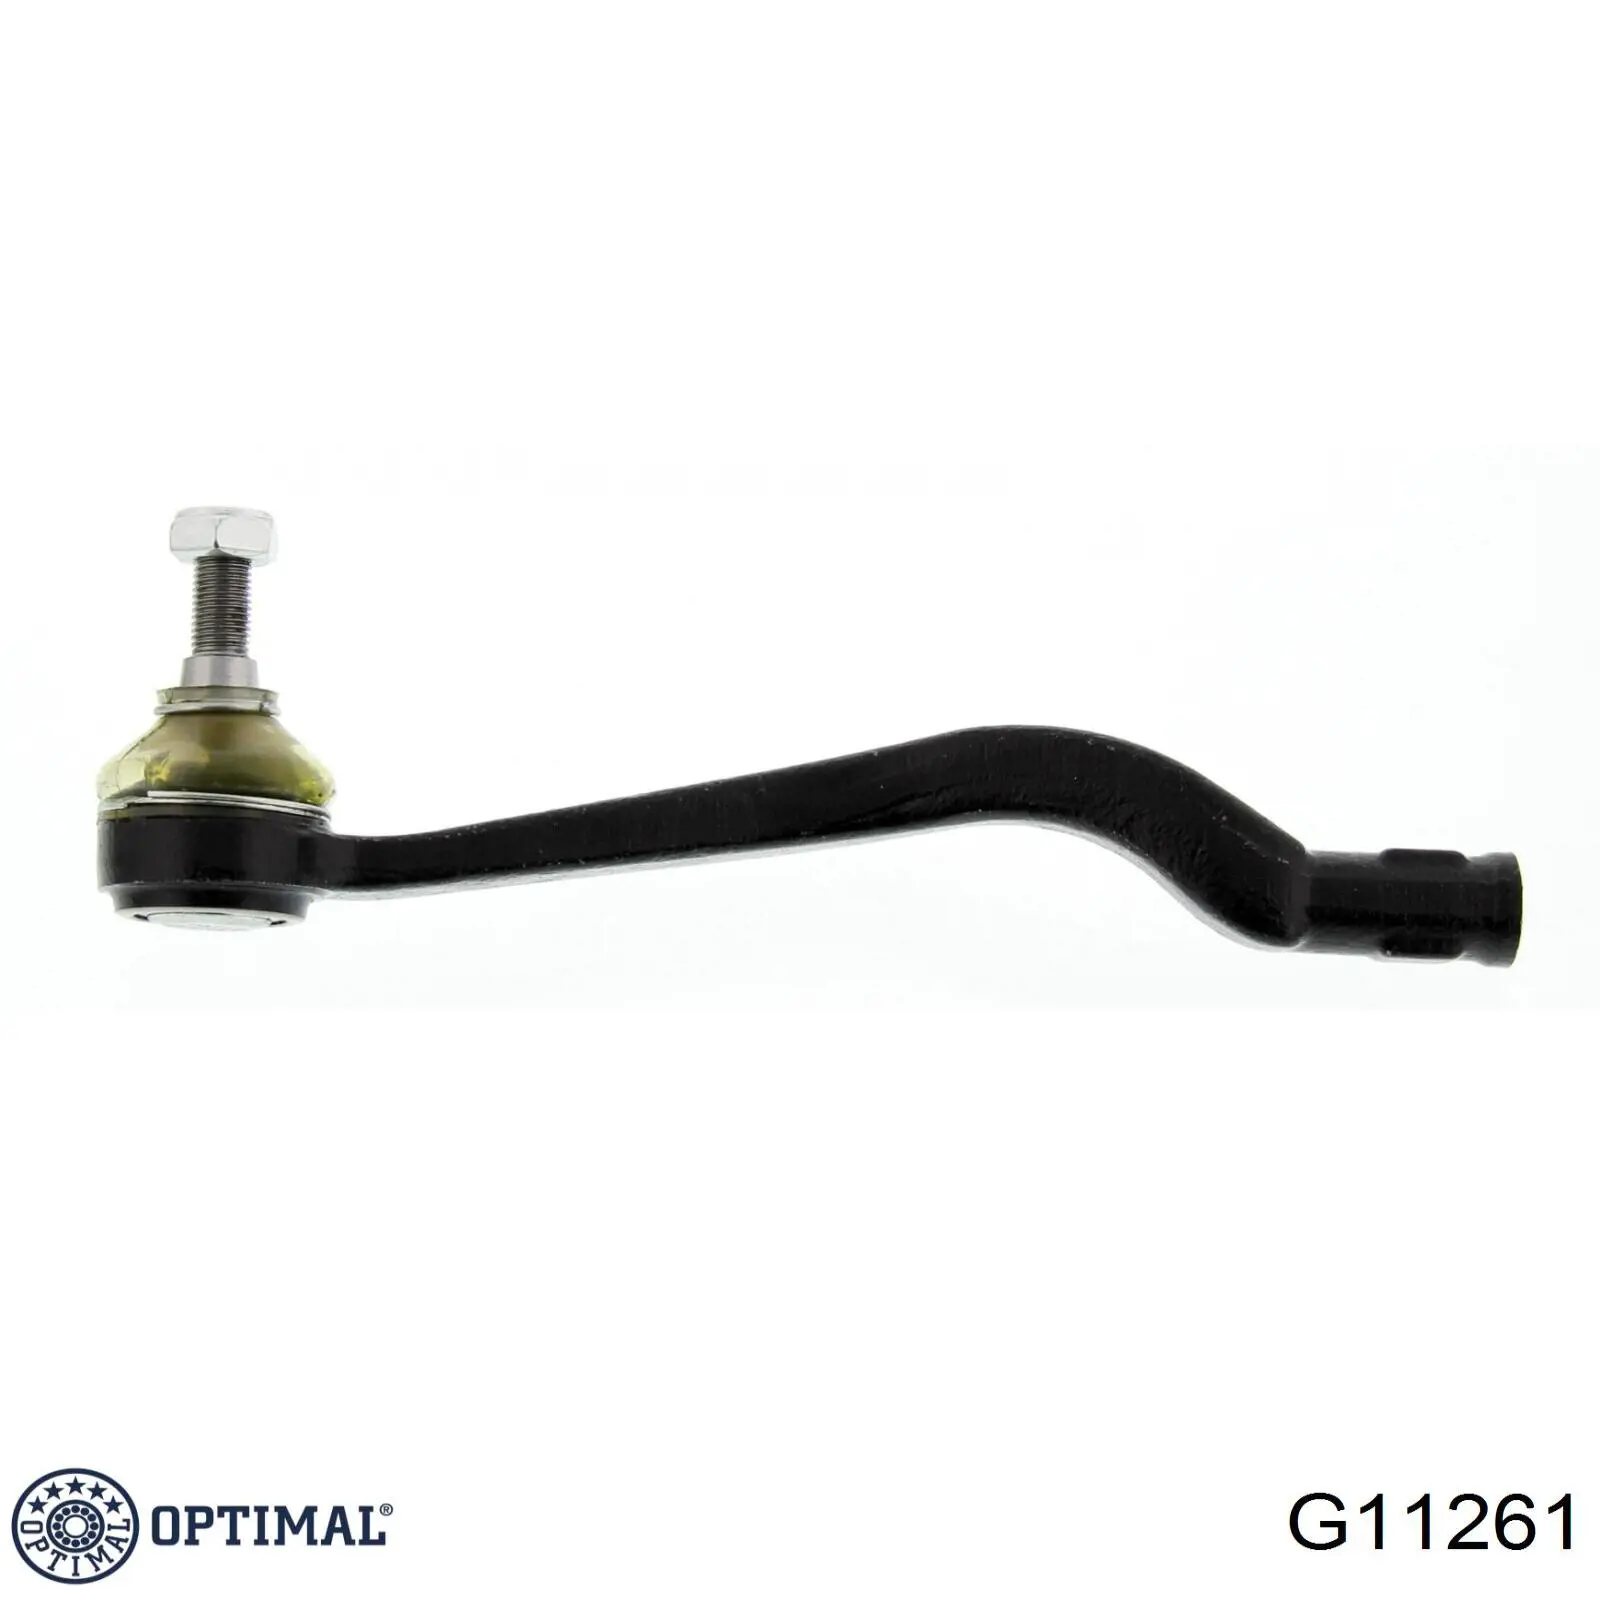 G11261 Optimal rótula barra de acoplamiento exterior